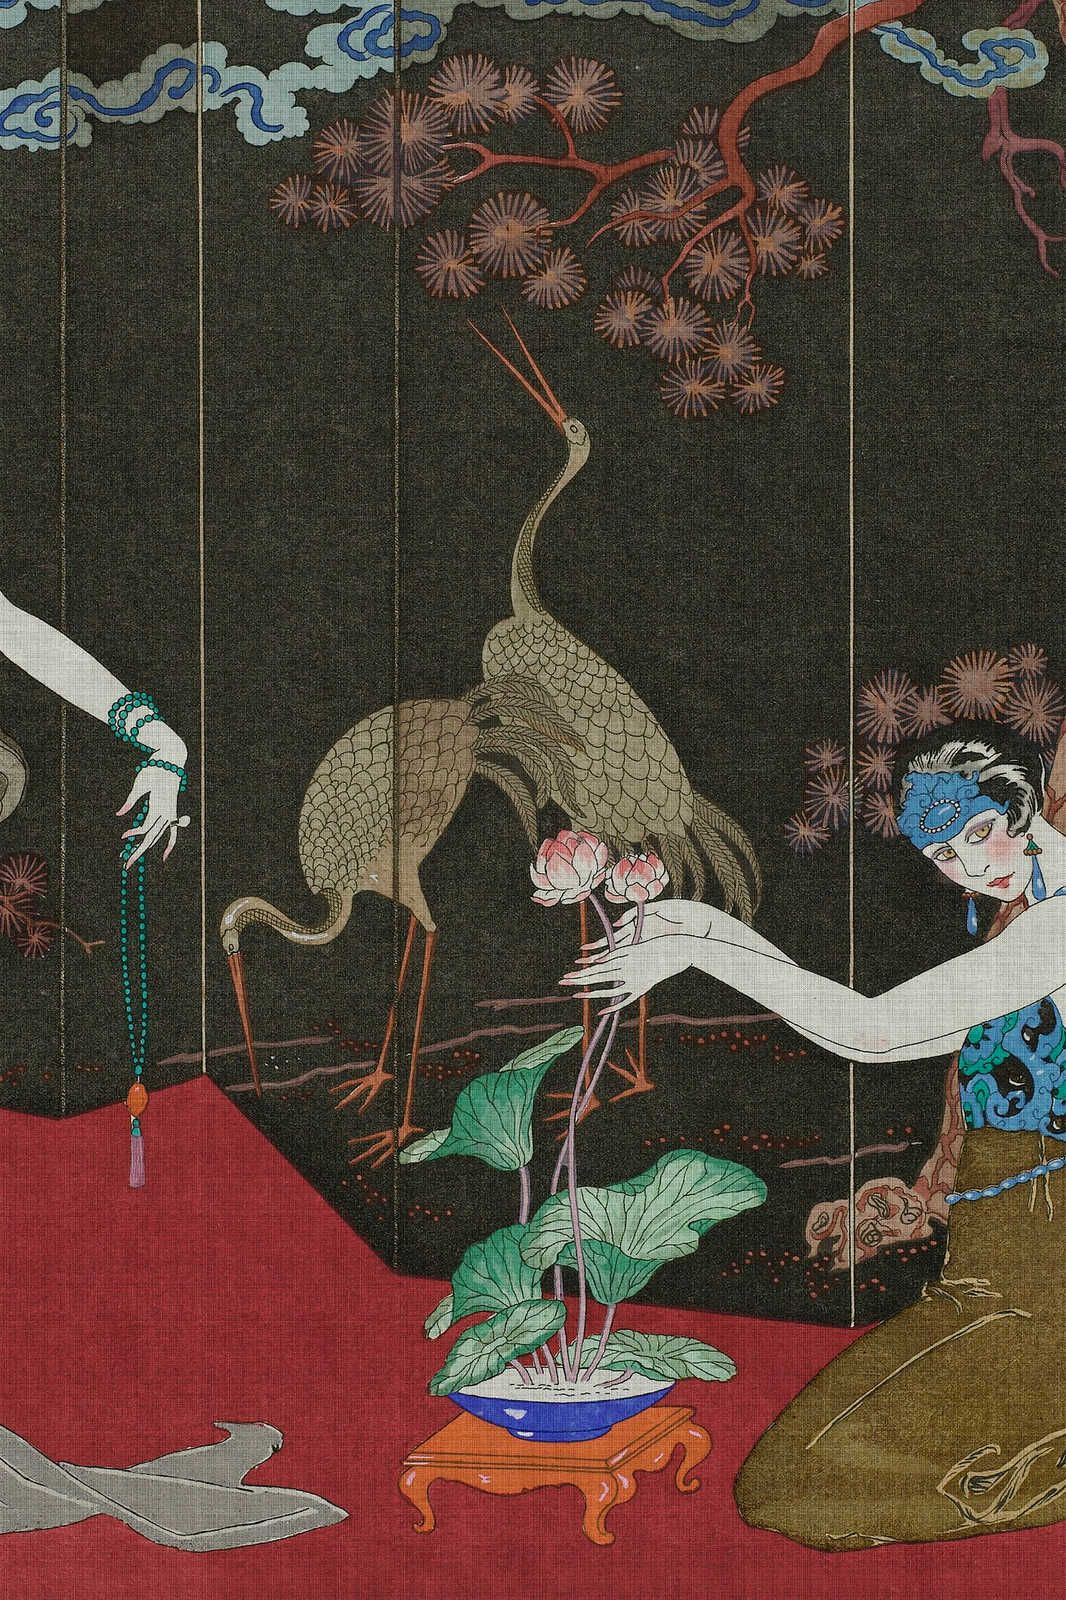             Babylon 1 - Impresión artística en lienzo de inspiración asiática clásica - 0,90 m x 0,60 m
        